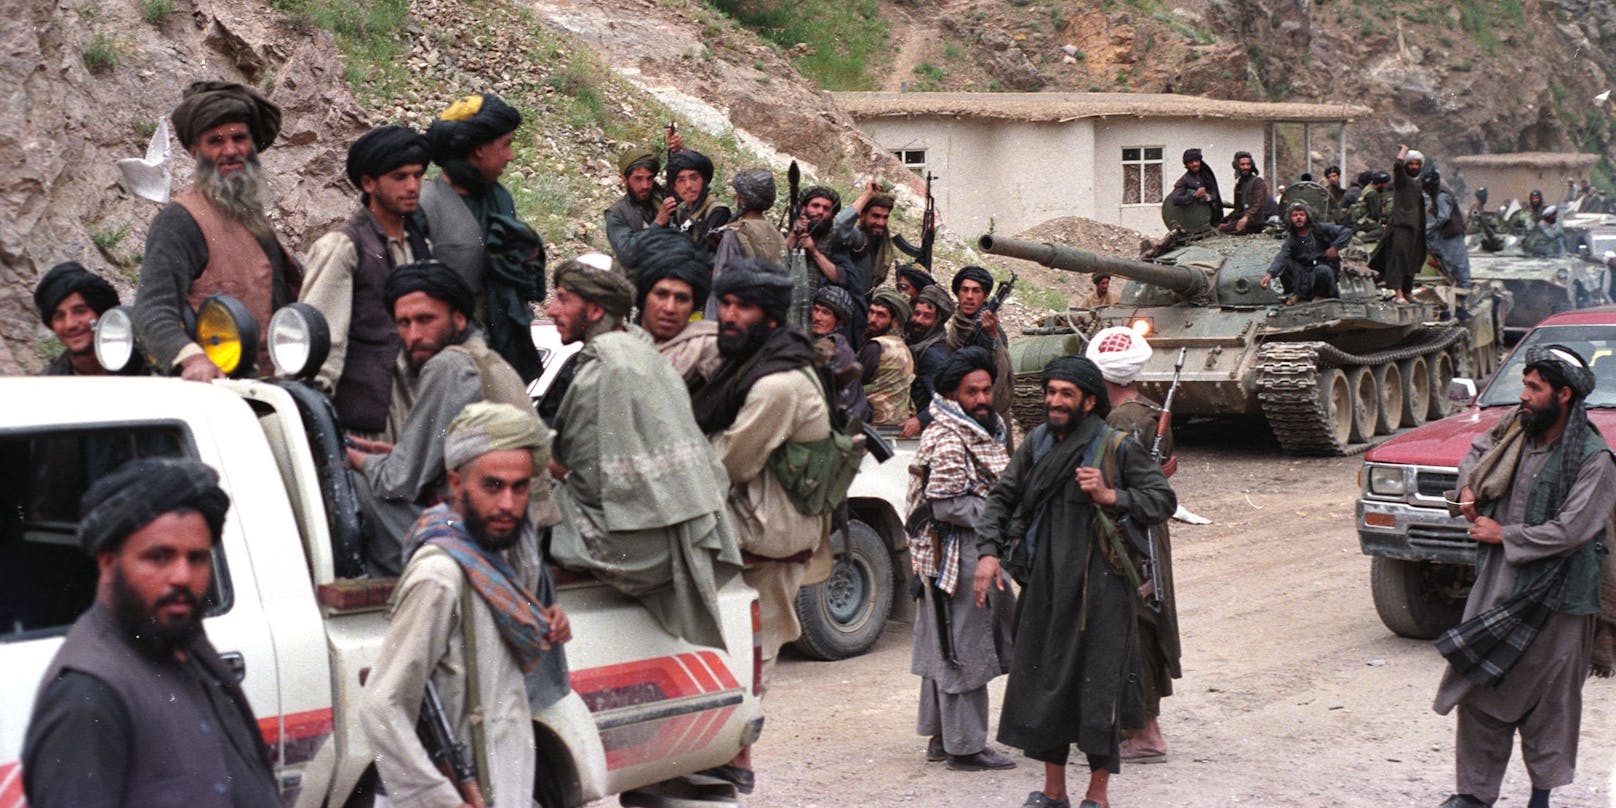 Die Taliban halten den älteren Mann bereist seit mehreren Wochen gefangen. (Symbolbild)